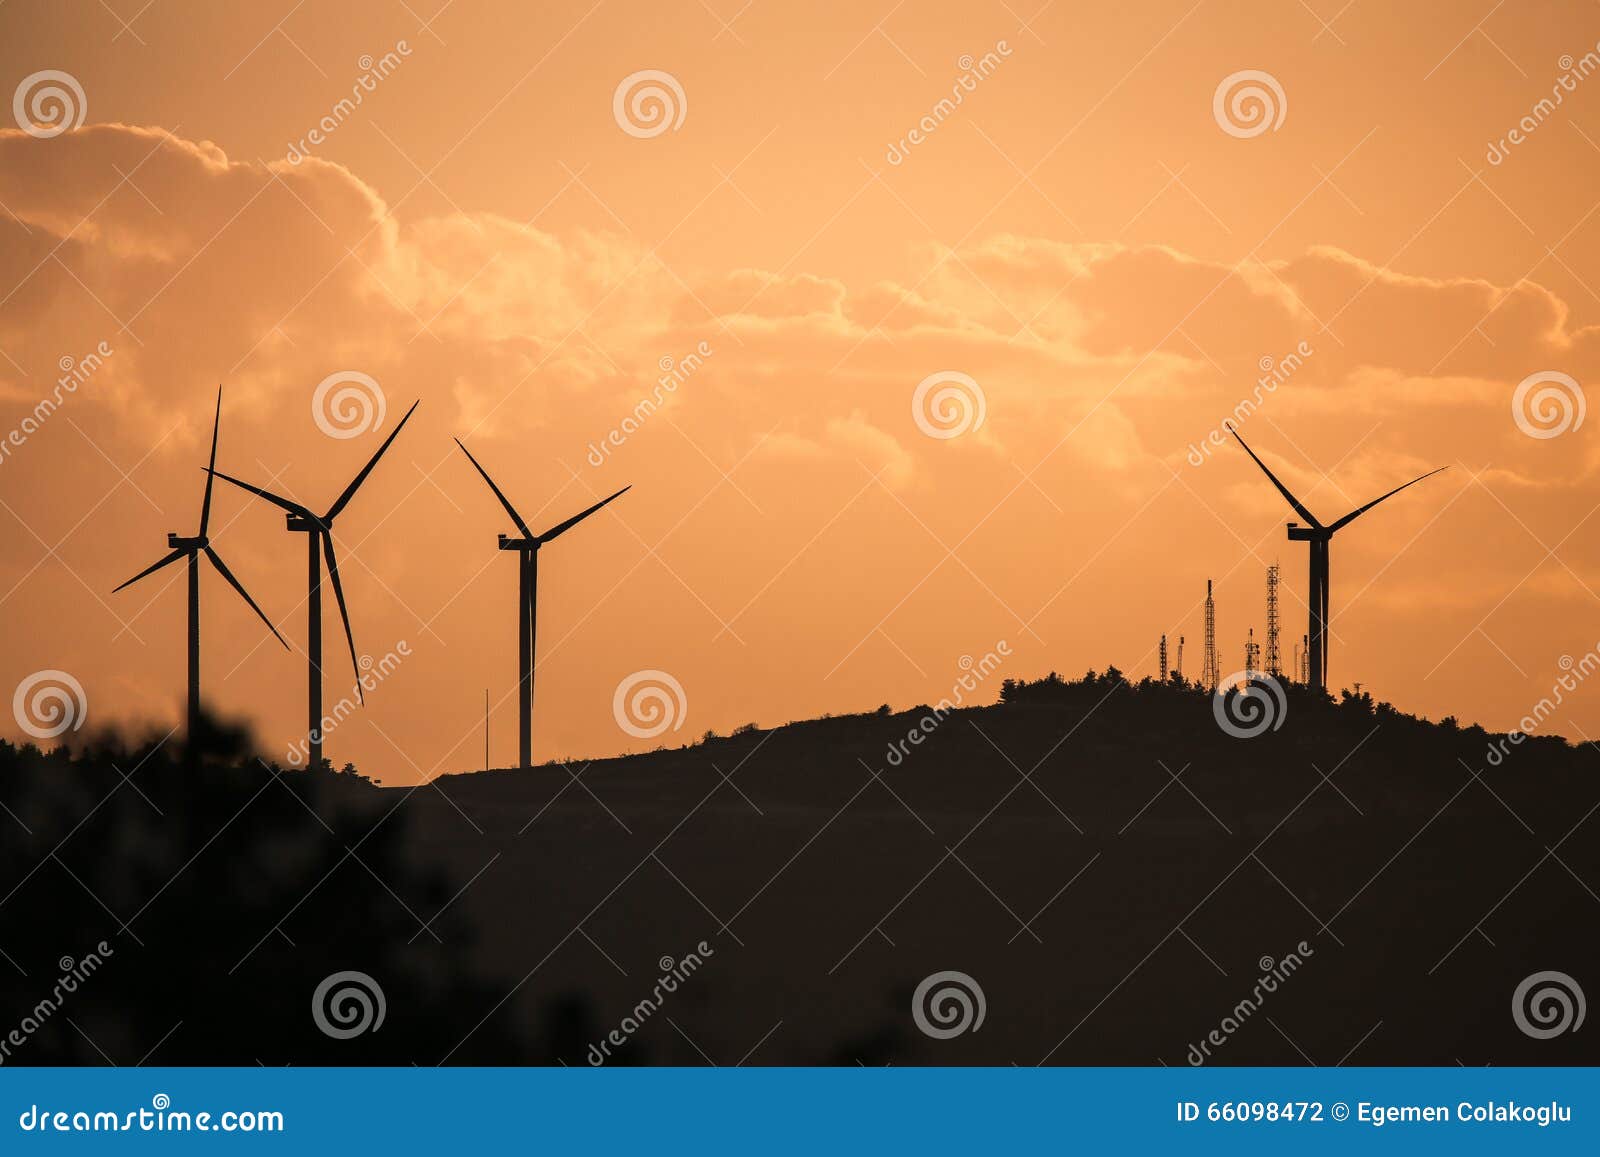 alacati wind turbines